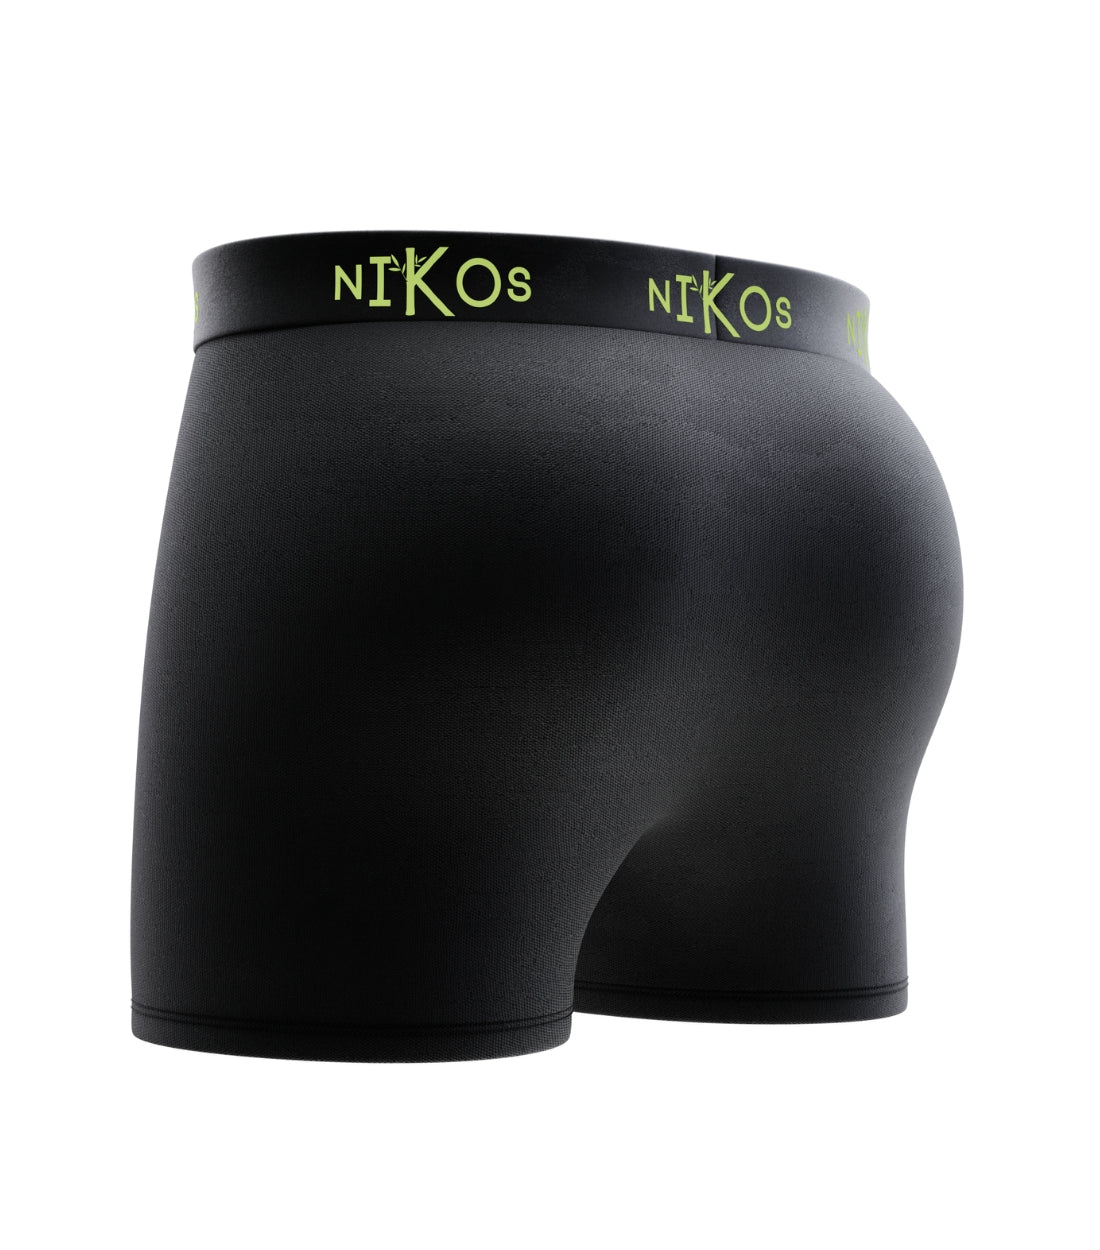 Nikos Bamboo Boxer Briefs in black color